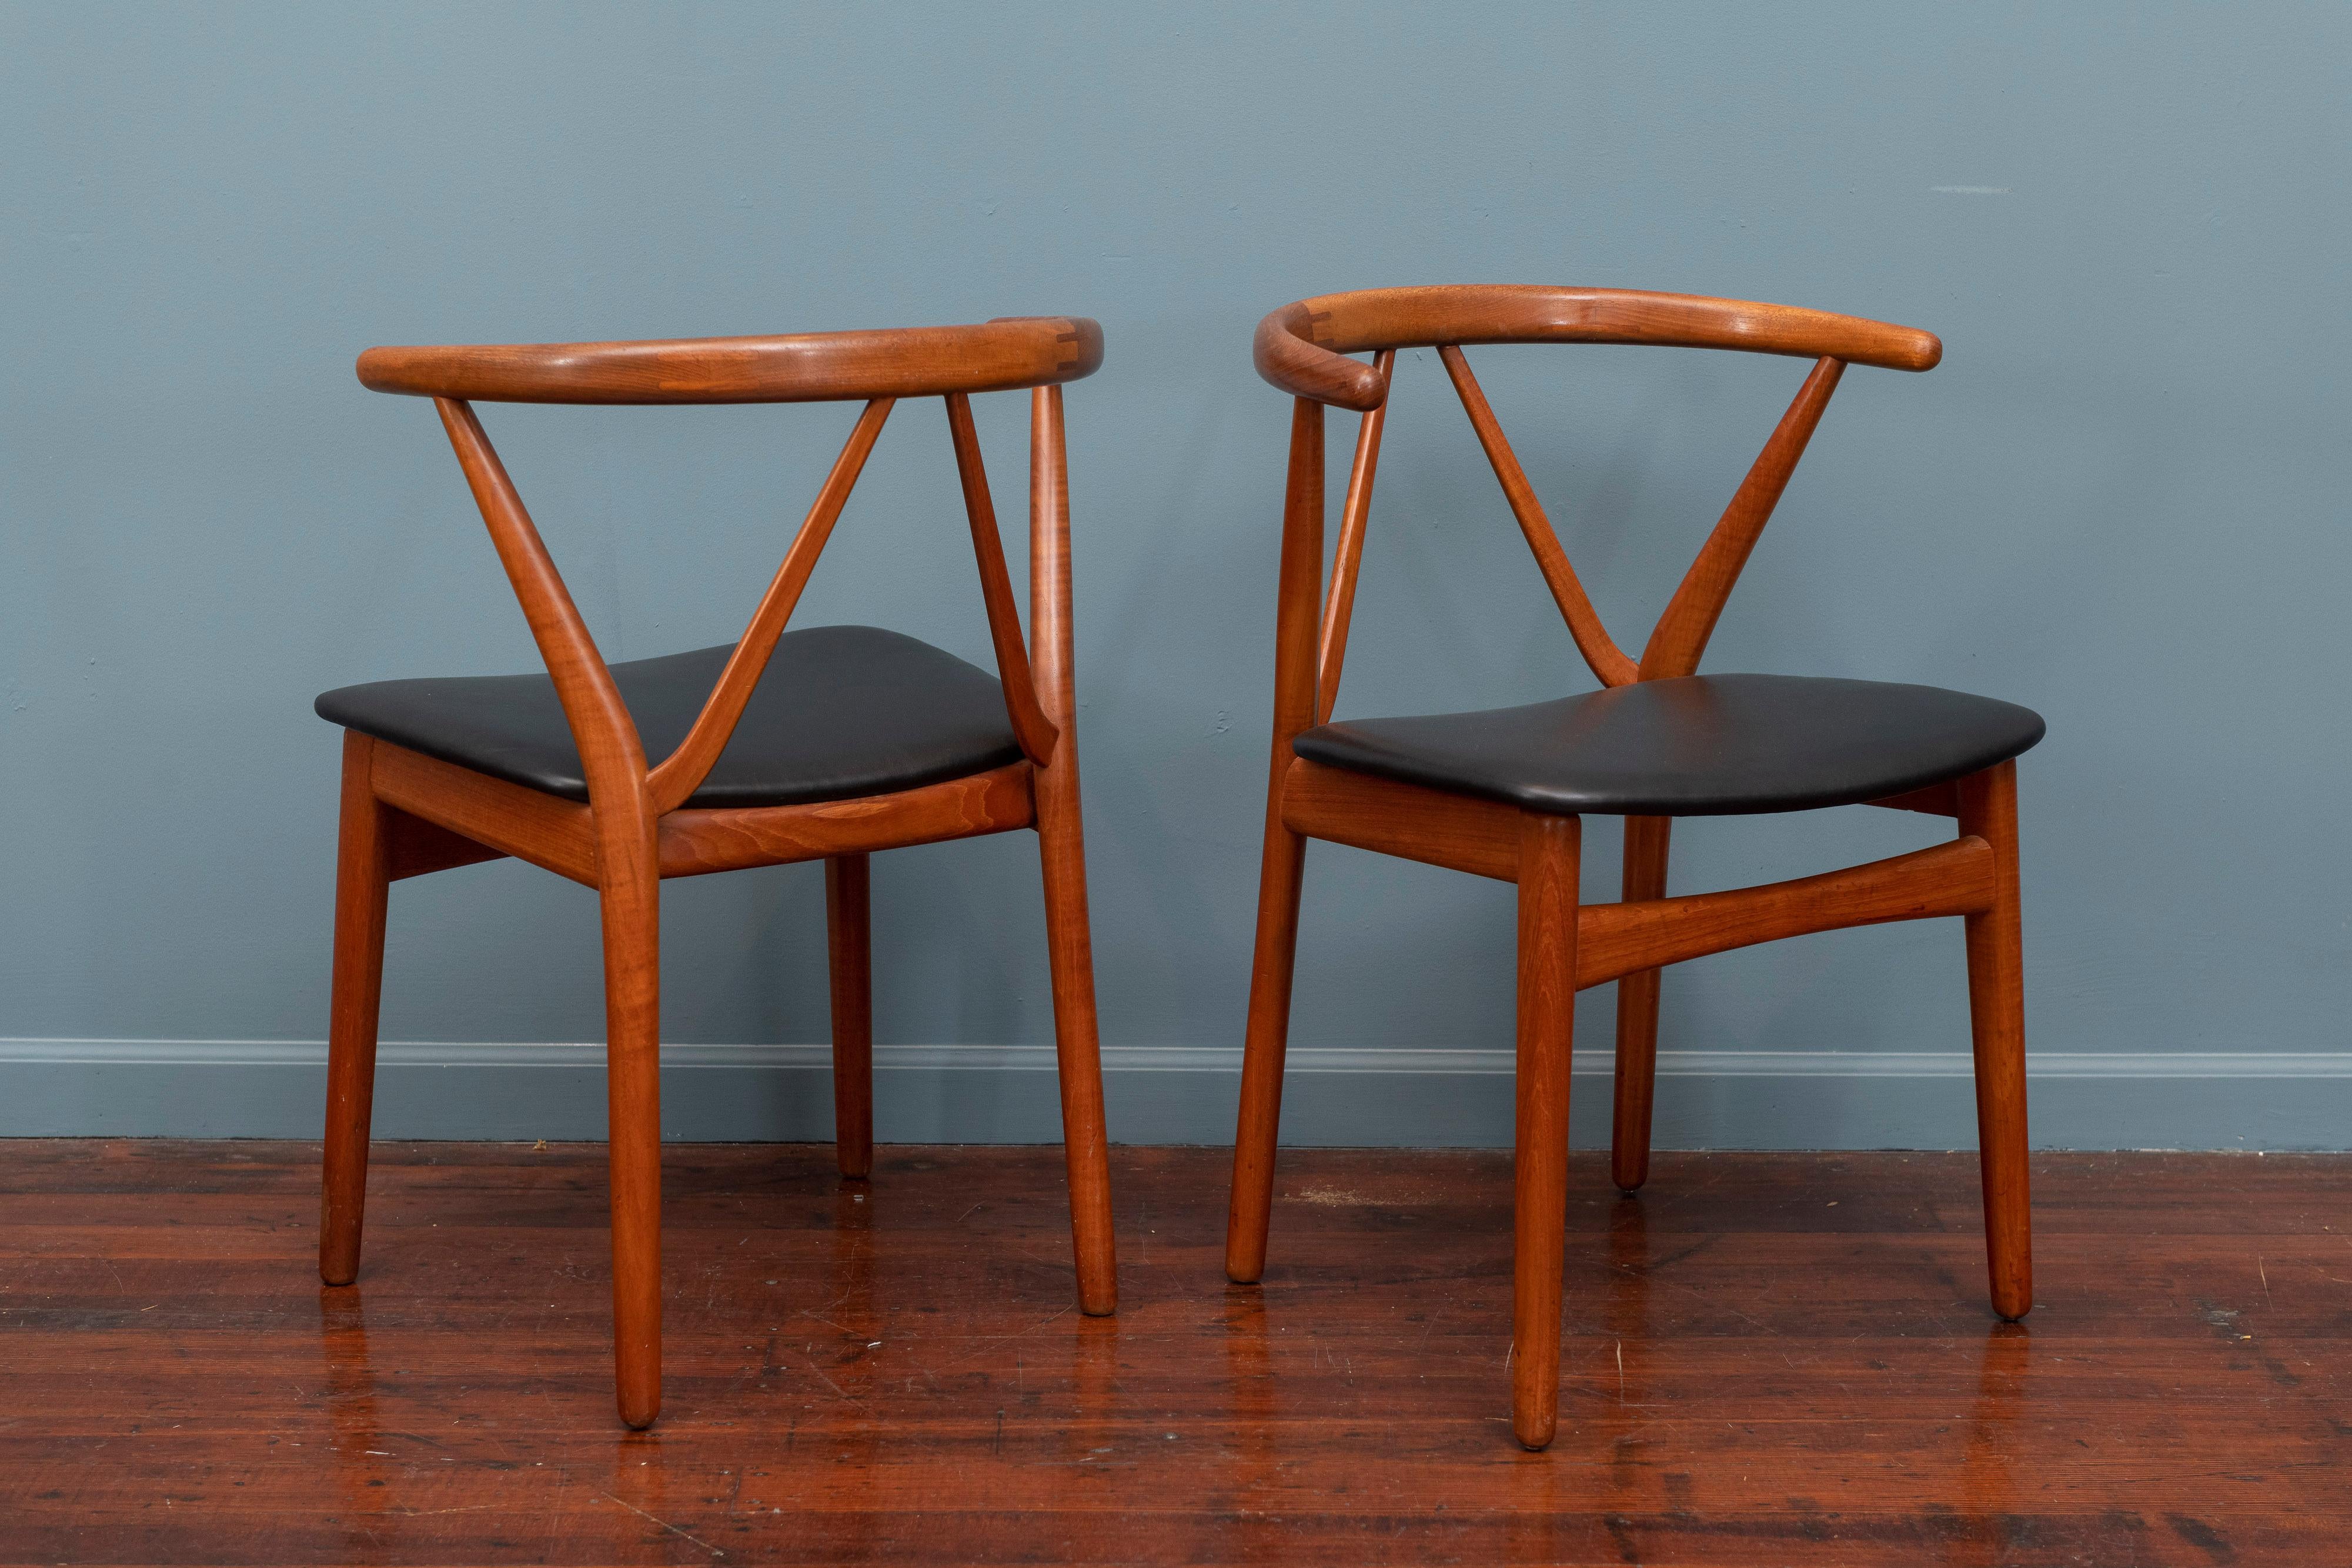 Mid-20th Century Scandinavian Modern Chairs by Henning Kjaernulf for Bruno Hansen